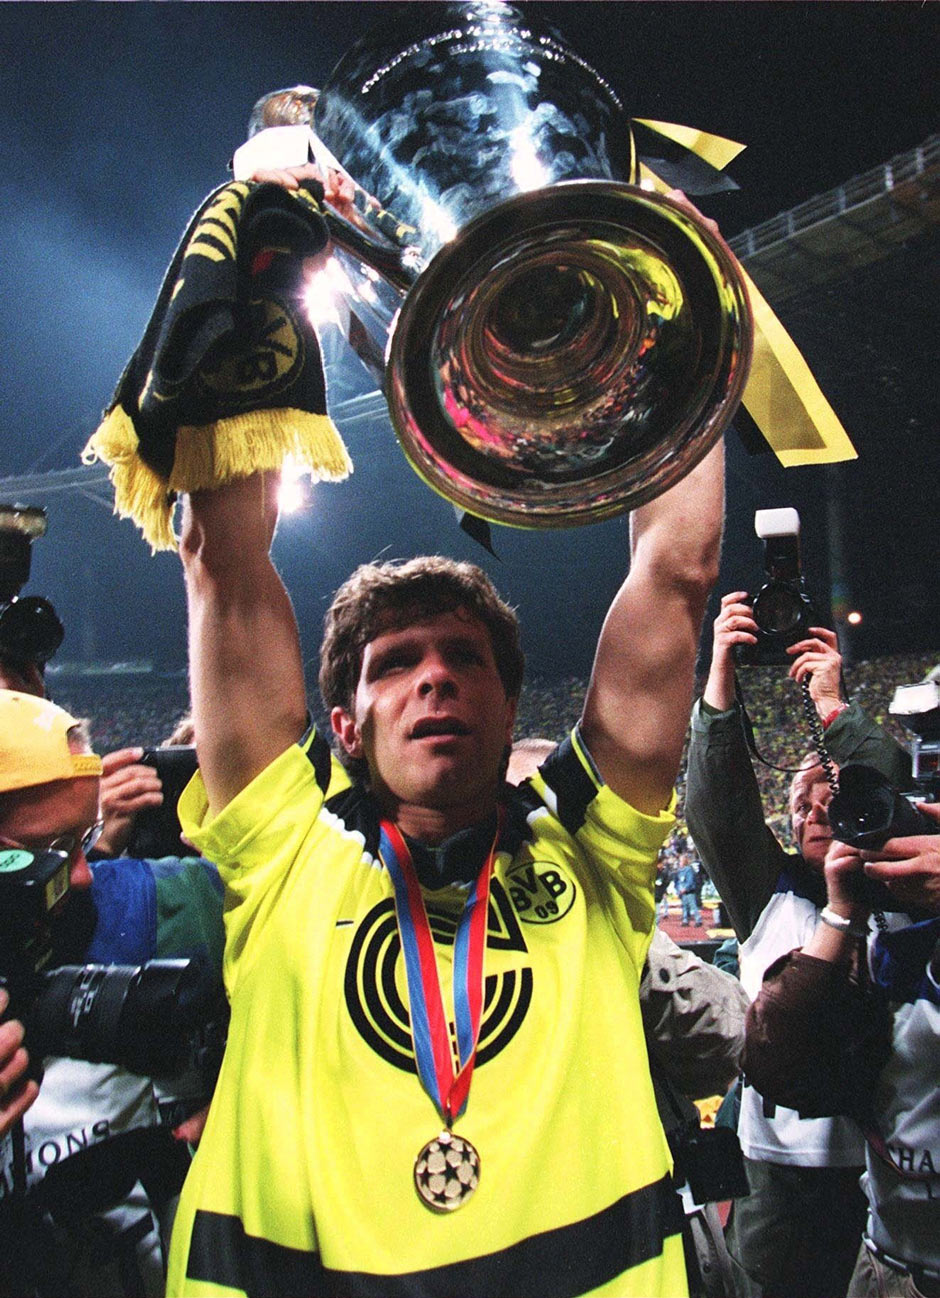 Der größte Erfolg: Trotz Doublesieg 2012 bleibt der Gewinn der Champions League 1997 das höchste der Gefühle für den BVB